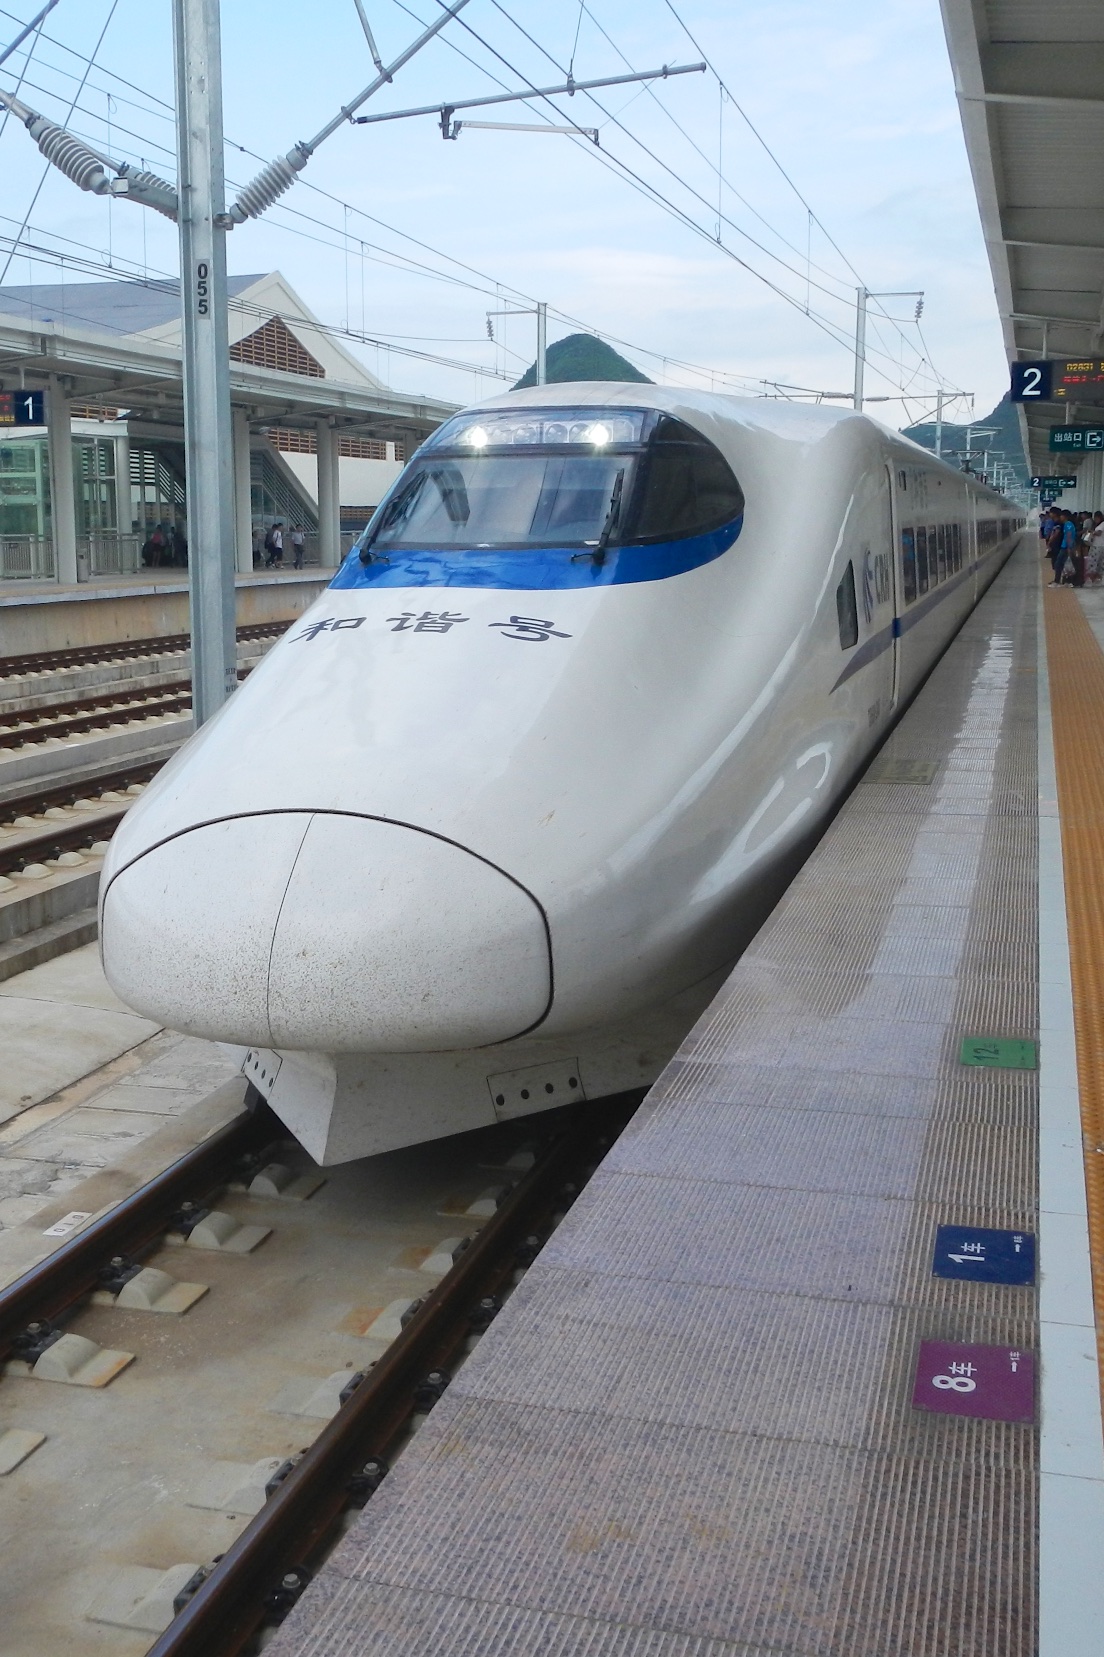  High speed train, Guilin 